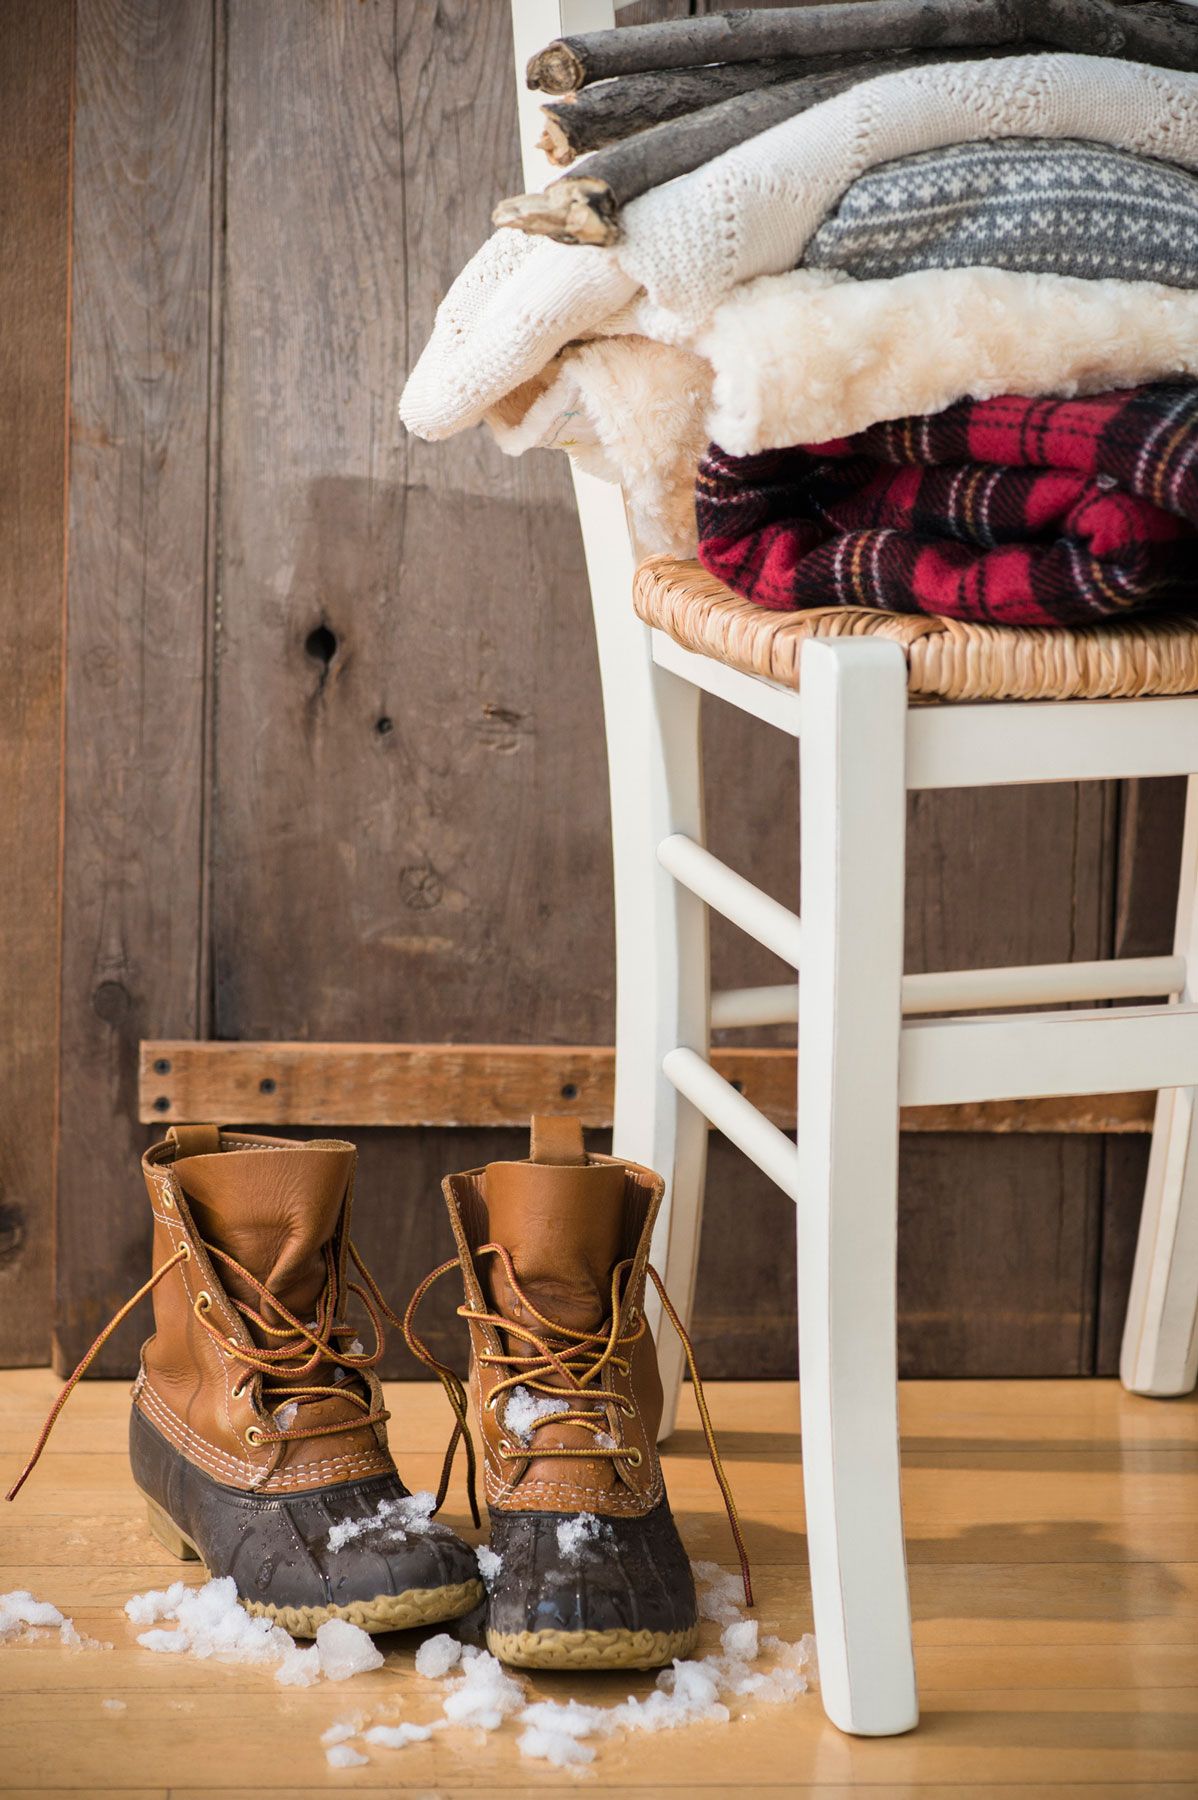 5 lihtsat viisi, kuidas puitpõrandad kogu talve hea välja näha